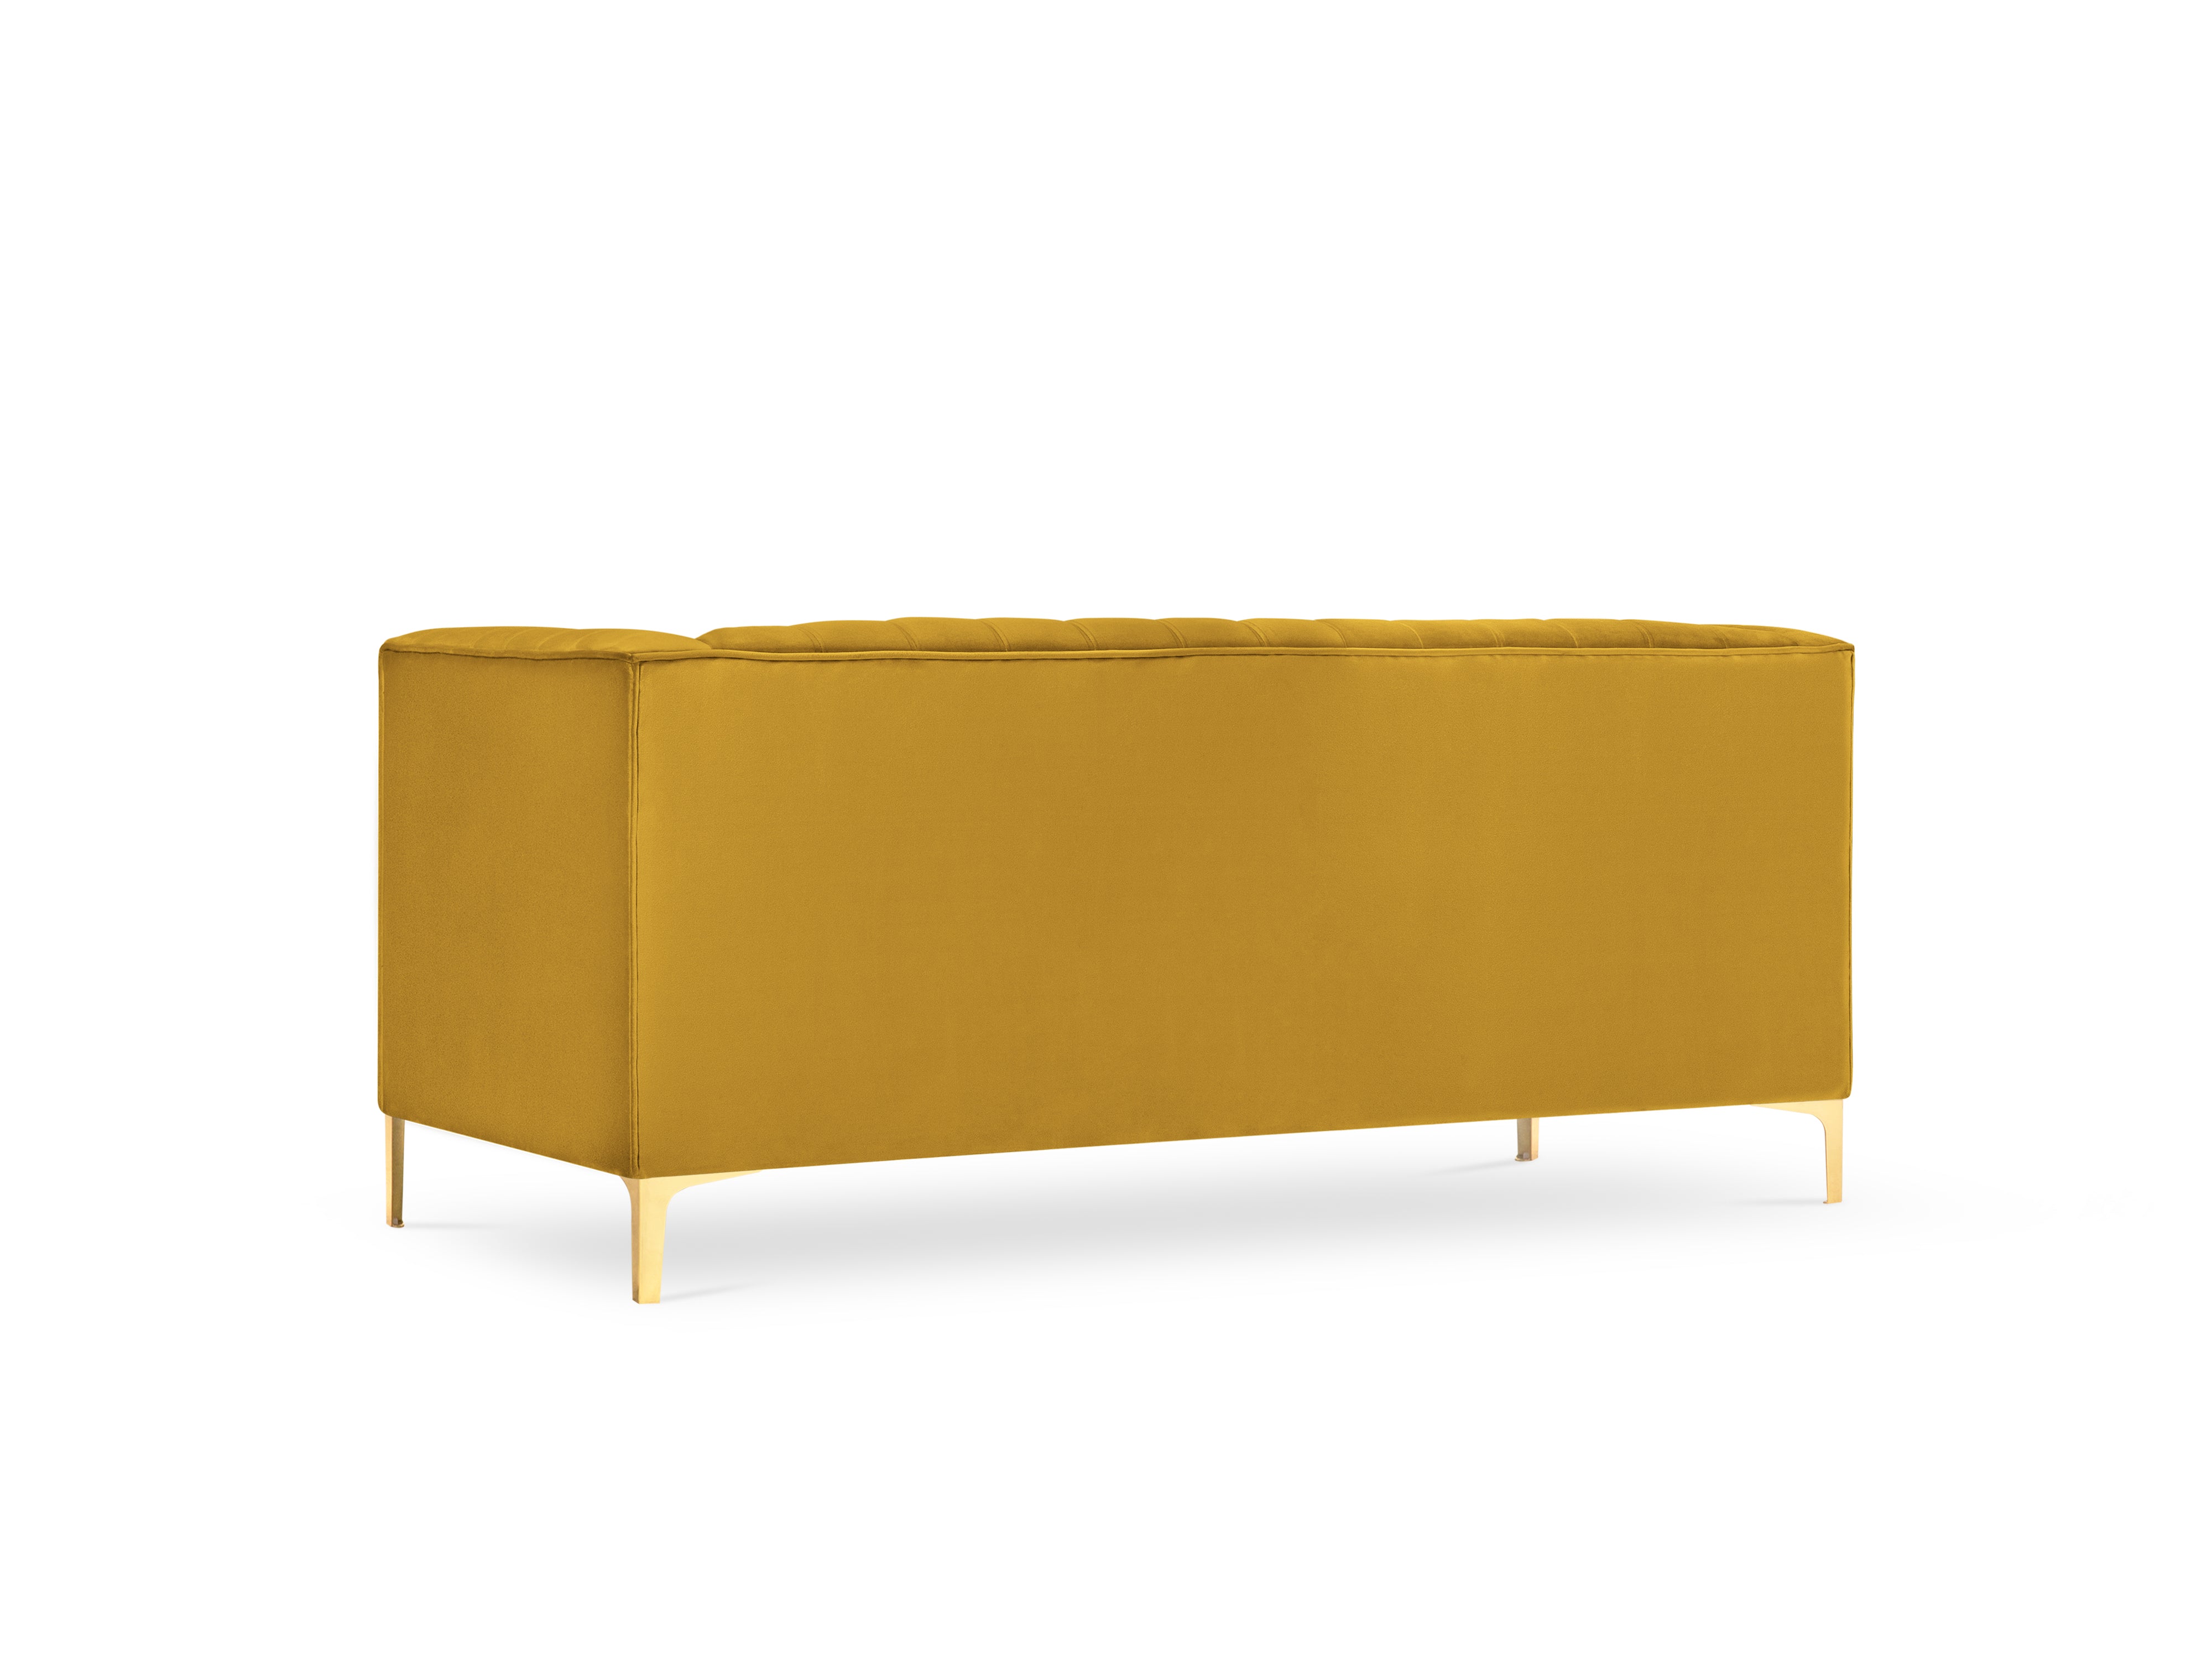 Geometric yellow velvet sofa